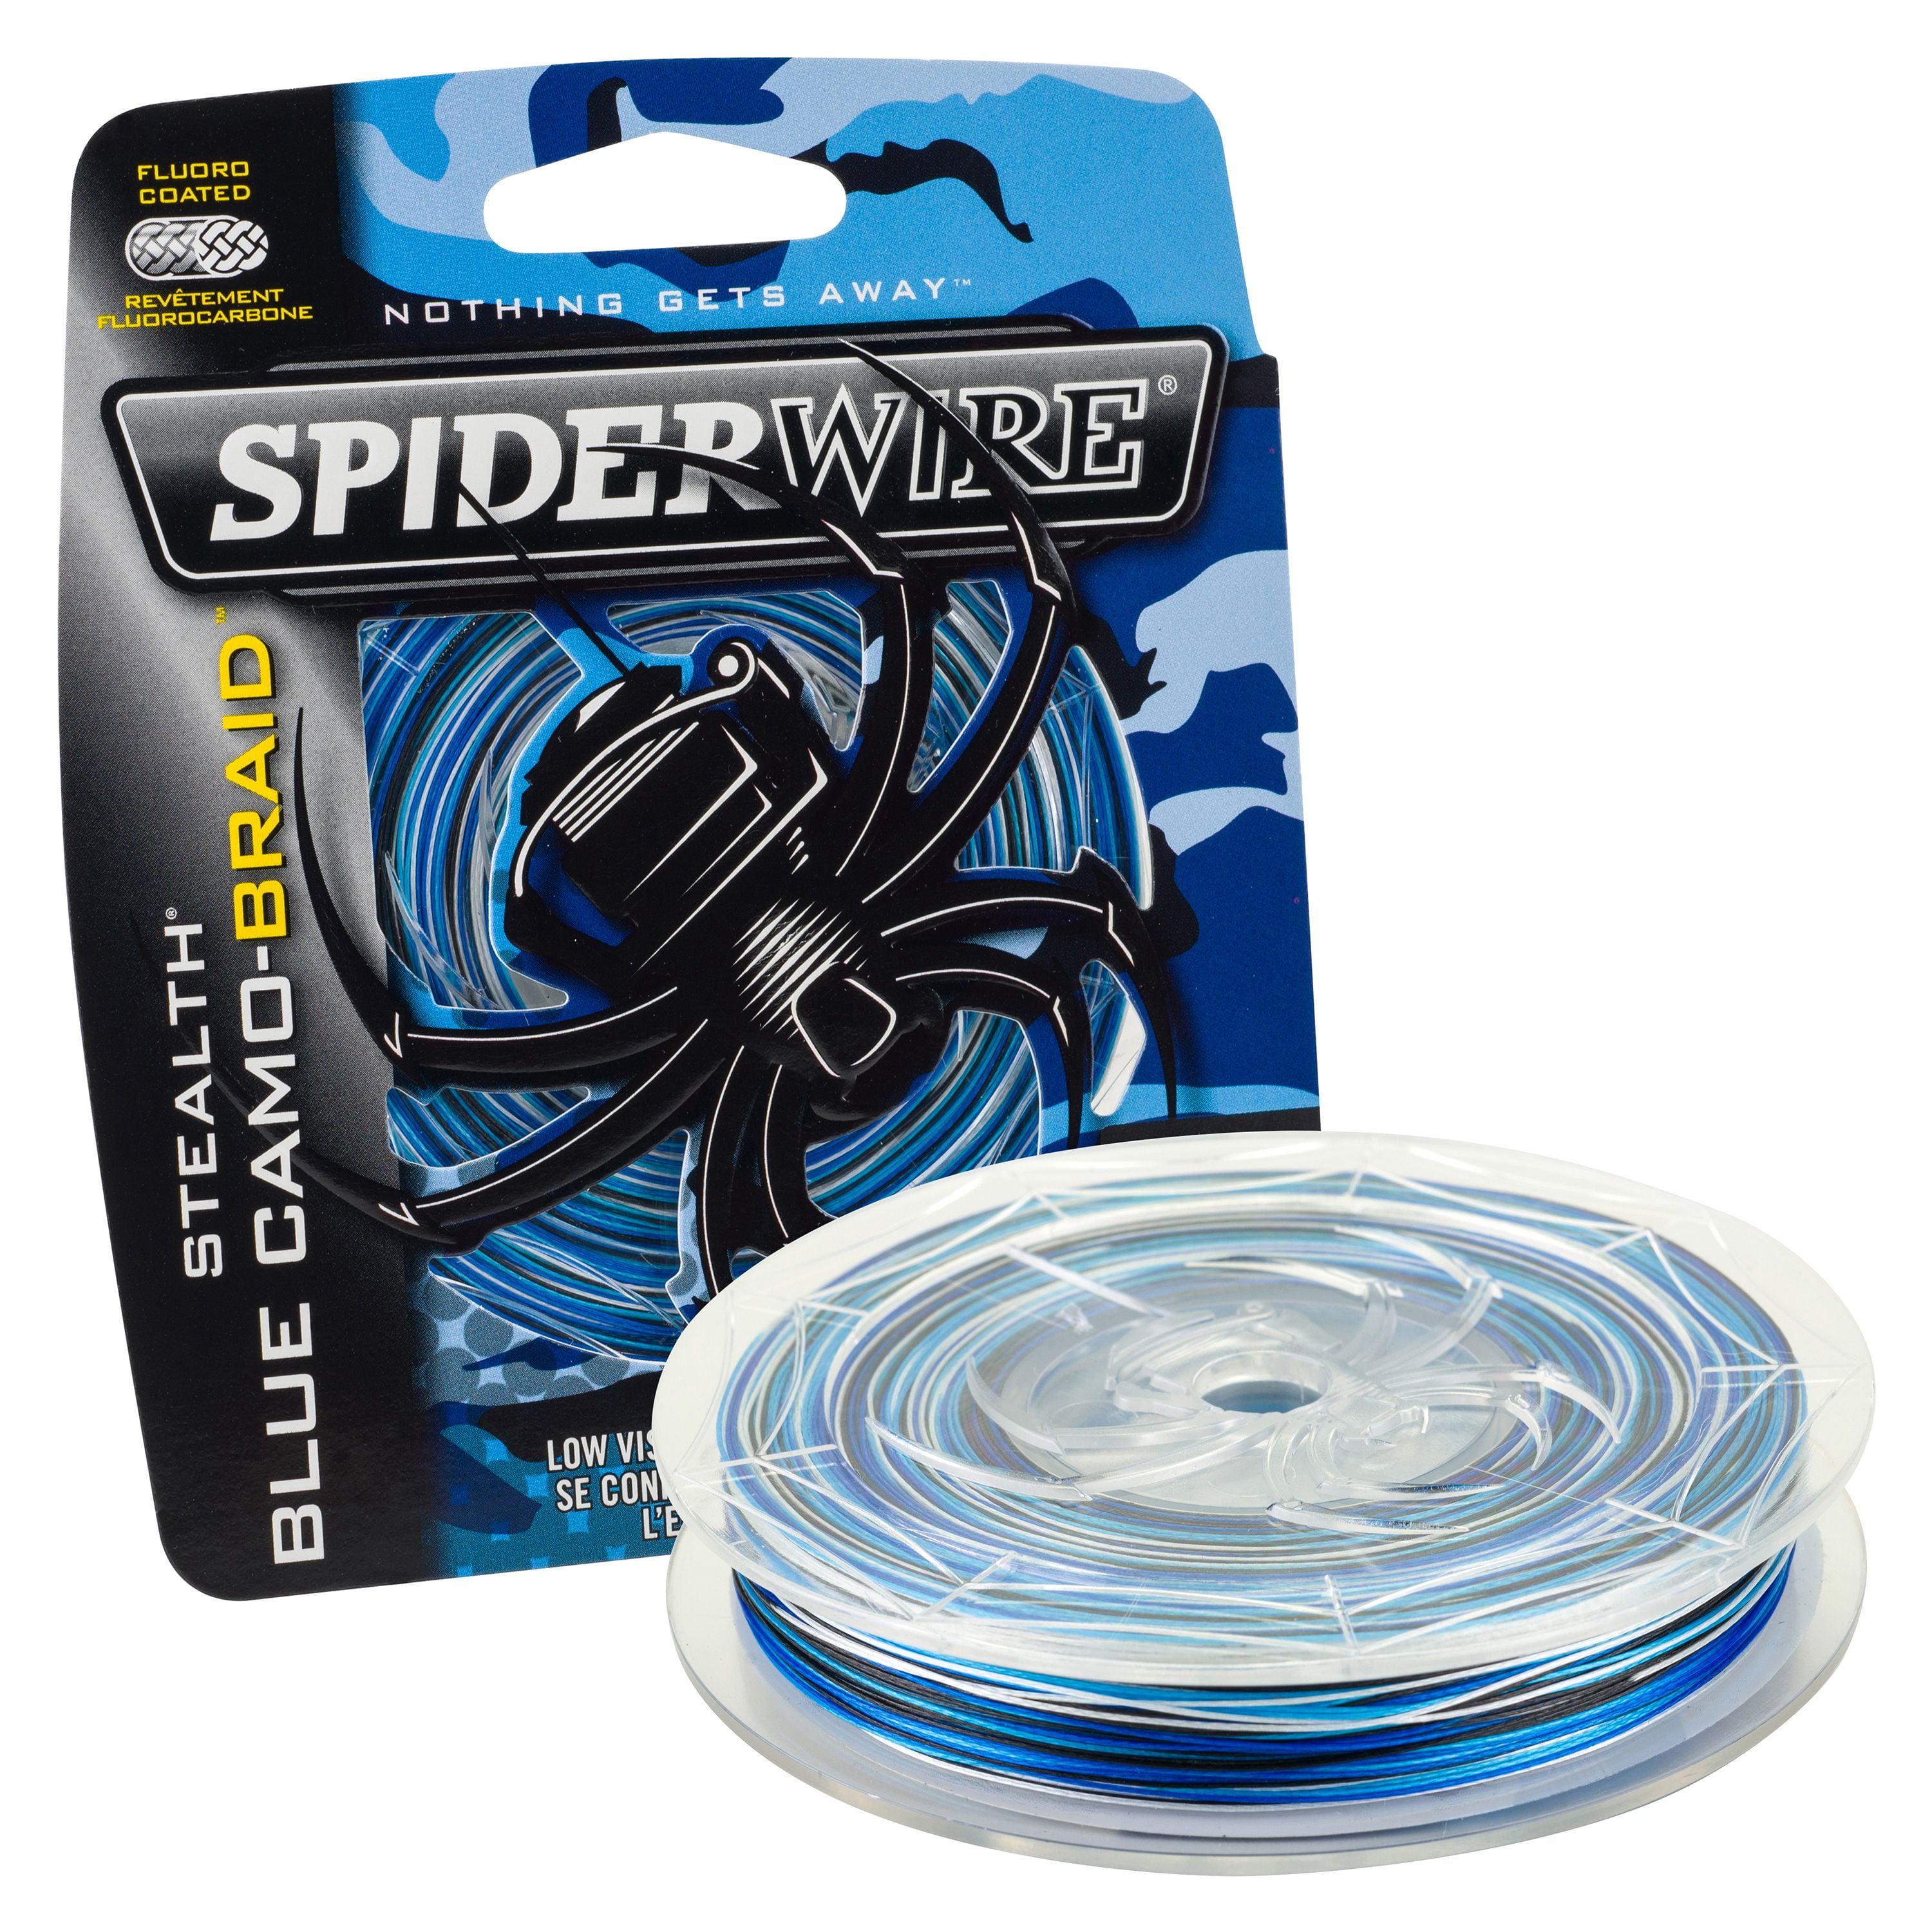 Spiderwire stealth Blue Camo-cuanto 25m trenzado era angel cuerda 0,10 €/m